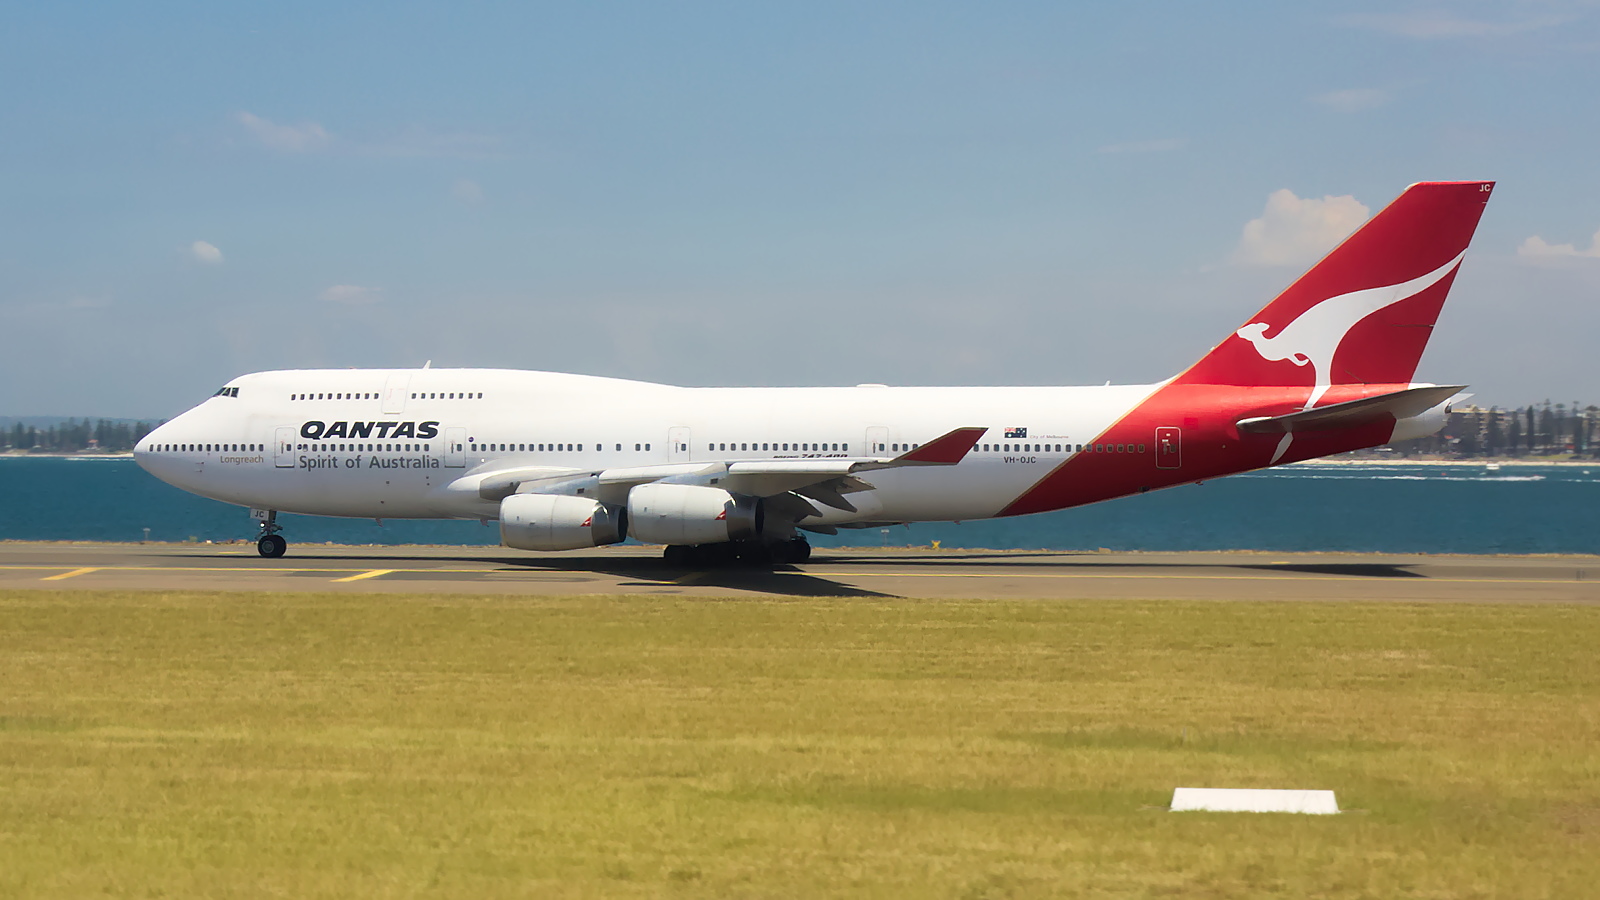 VH-OJC ✈ Qantas Boeing 747-438 @ Sydney-Kingsford Smith